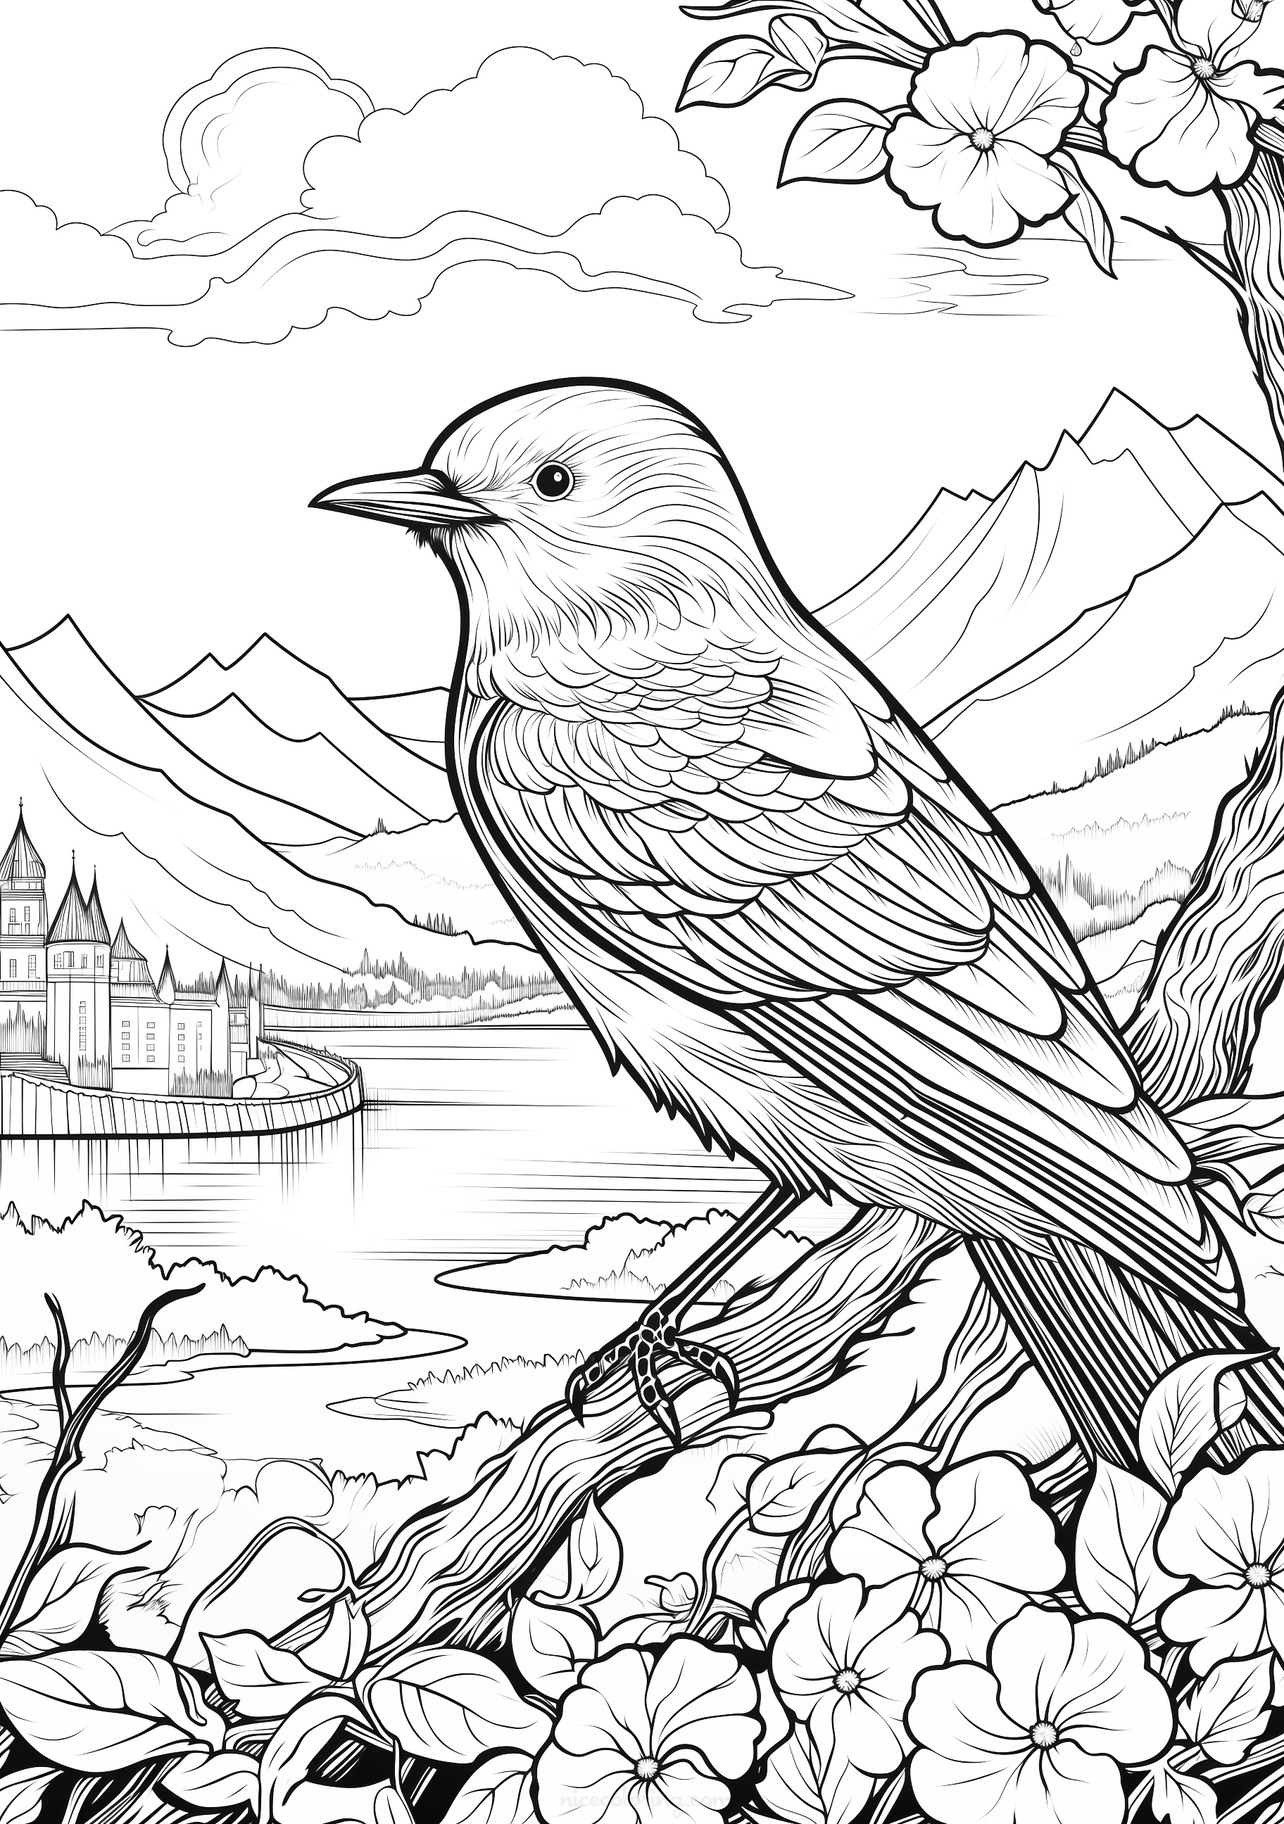 Черно-белая раскраска птицы на фоне замка и гор